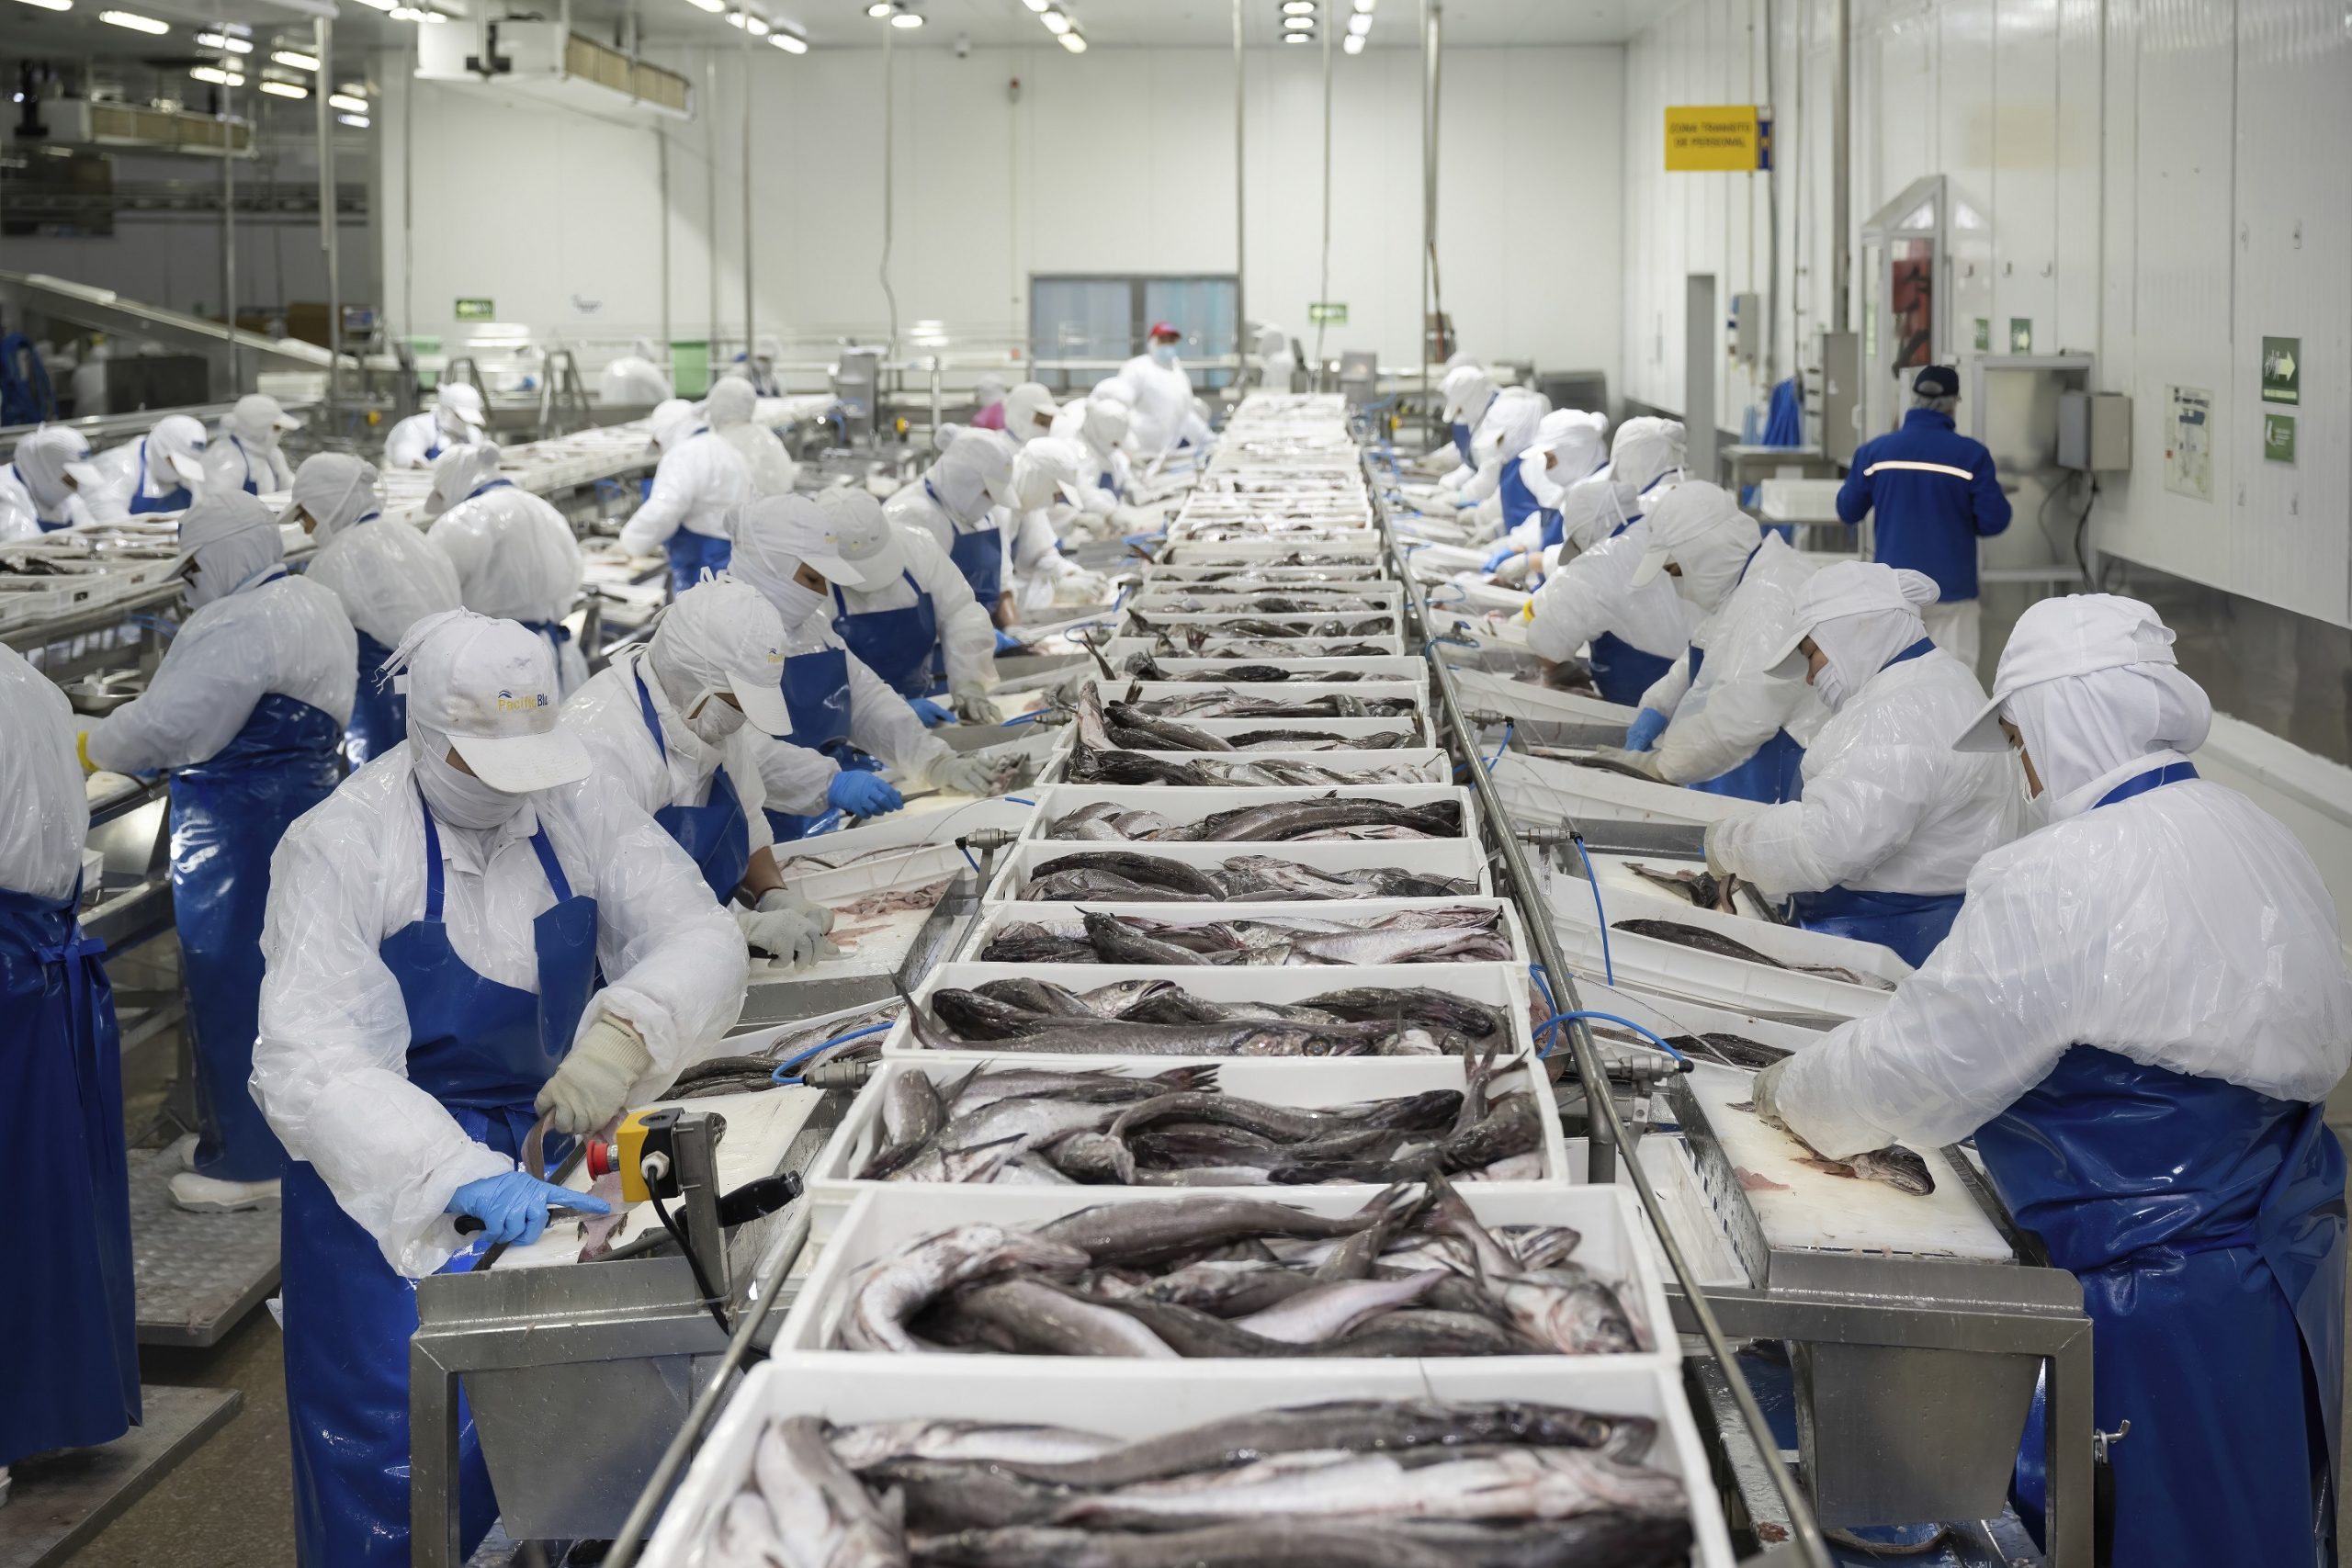 Ámbito laboral: Pesca industrial busca reforzar iniciativas de